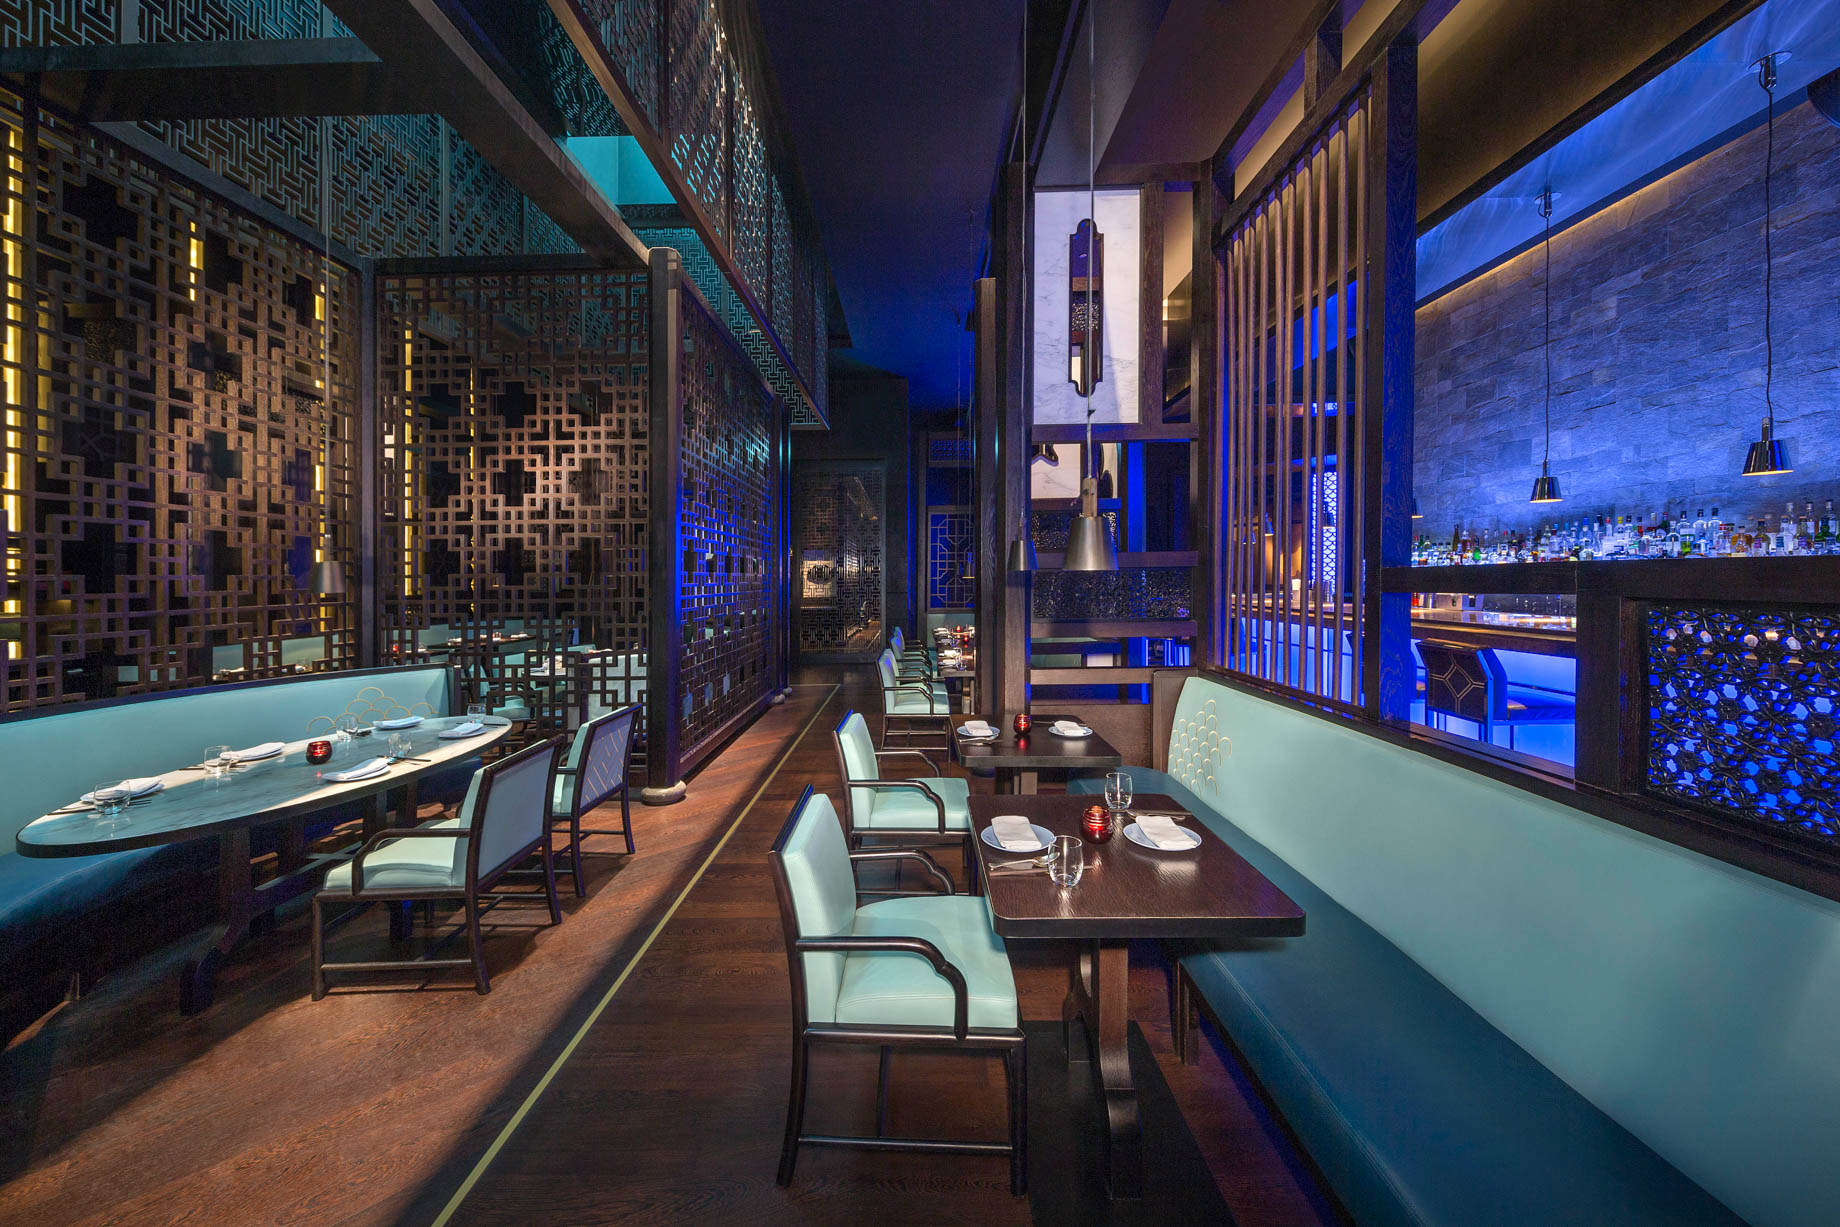 Atlantis The Palm Resort – Crescent Rd, Dubai, UAE – Hakkasan Restaurant